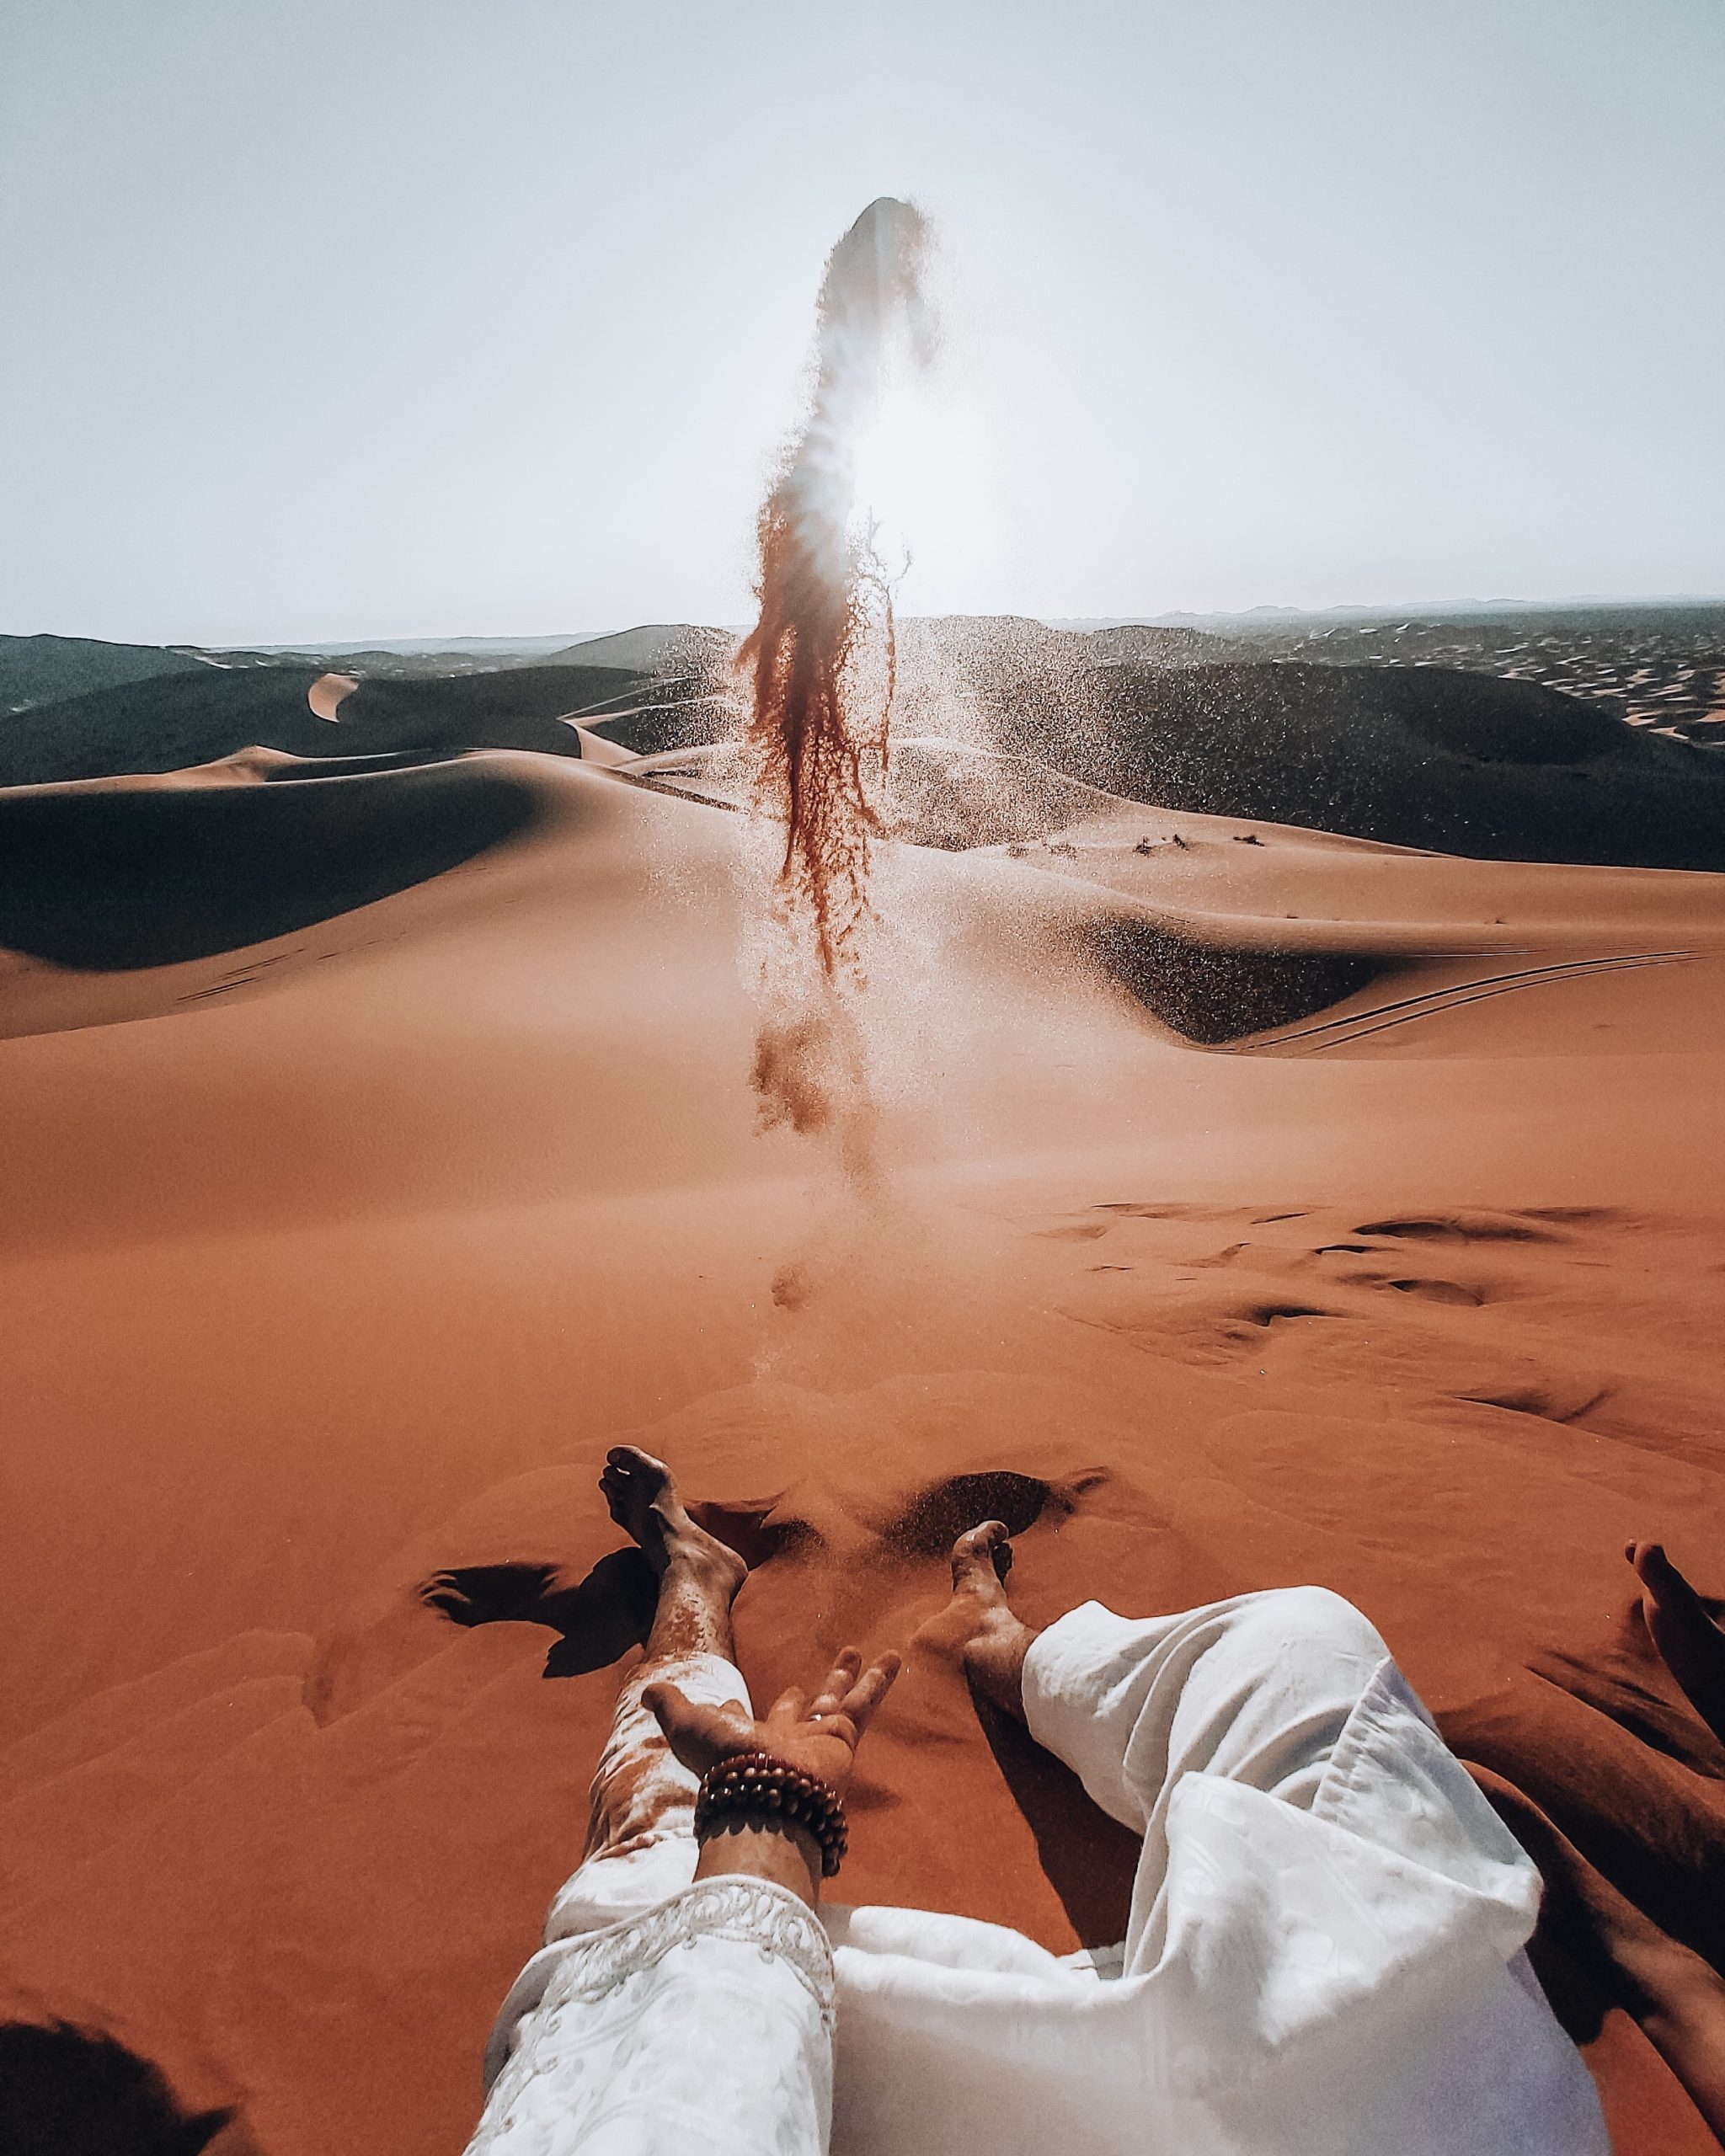 Morocco's Sahara Desert